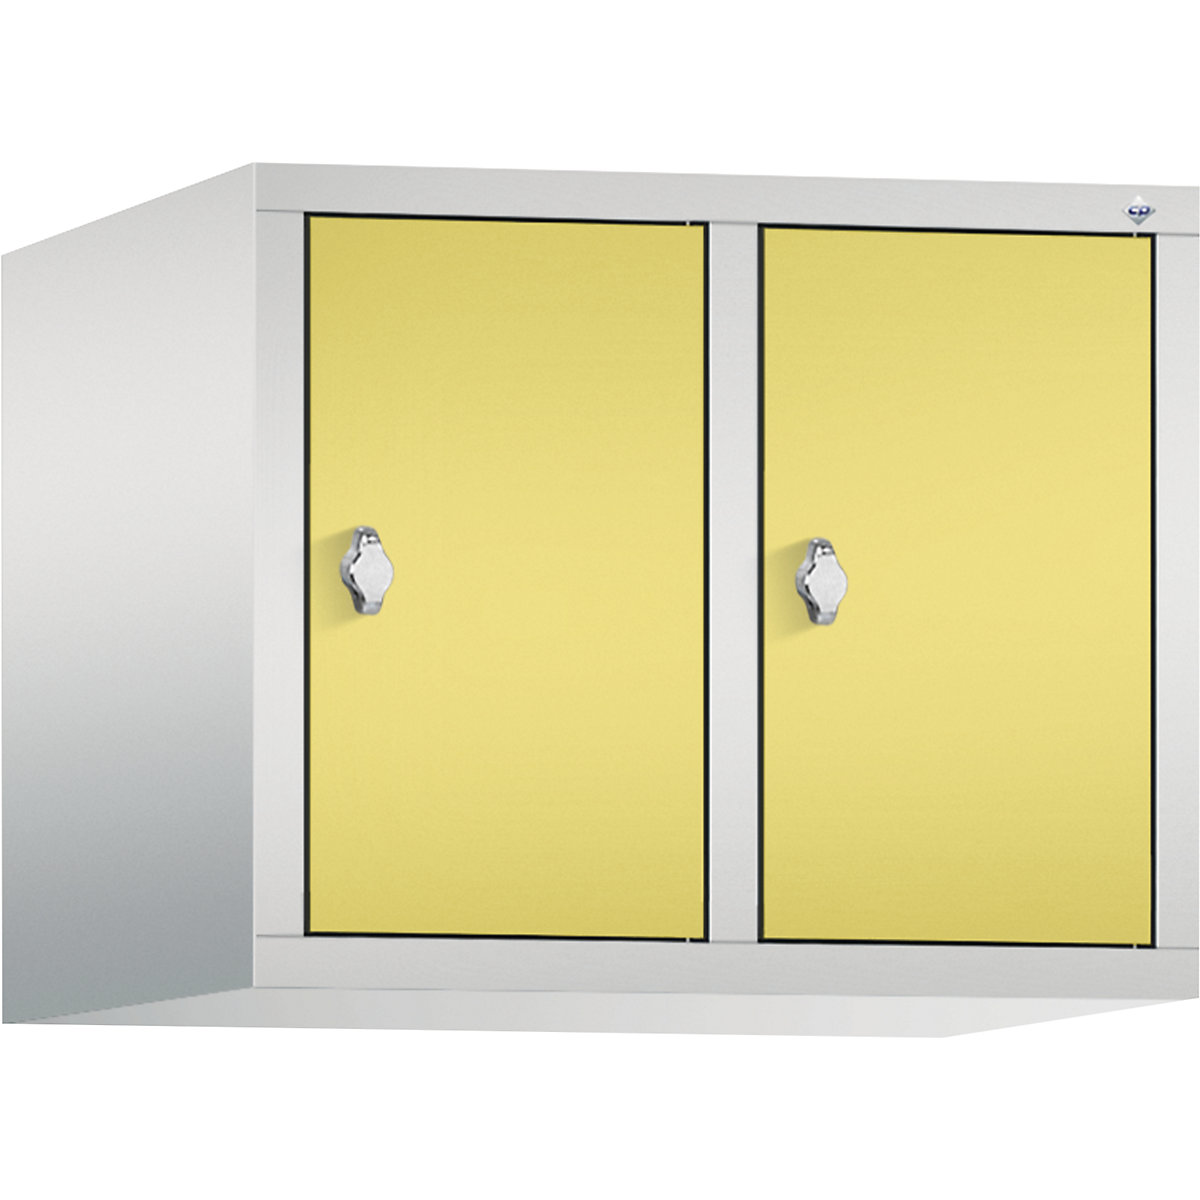 C+P – Altillo CLASSIC, 2 compartimentos, anchura de compartimento 300 mm, gris luminoso / amarillo azufre